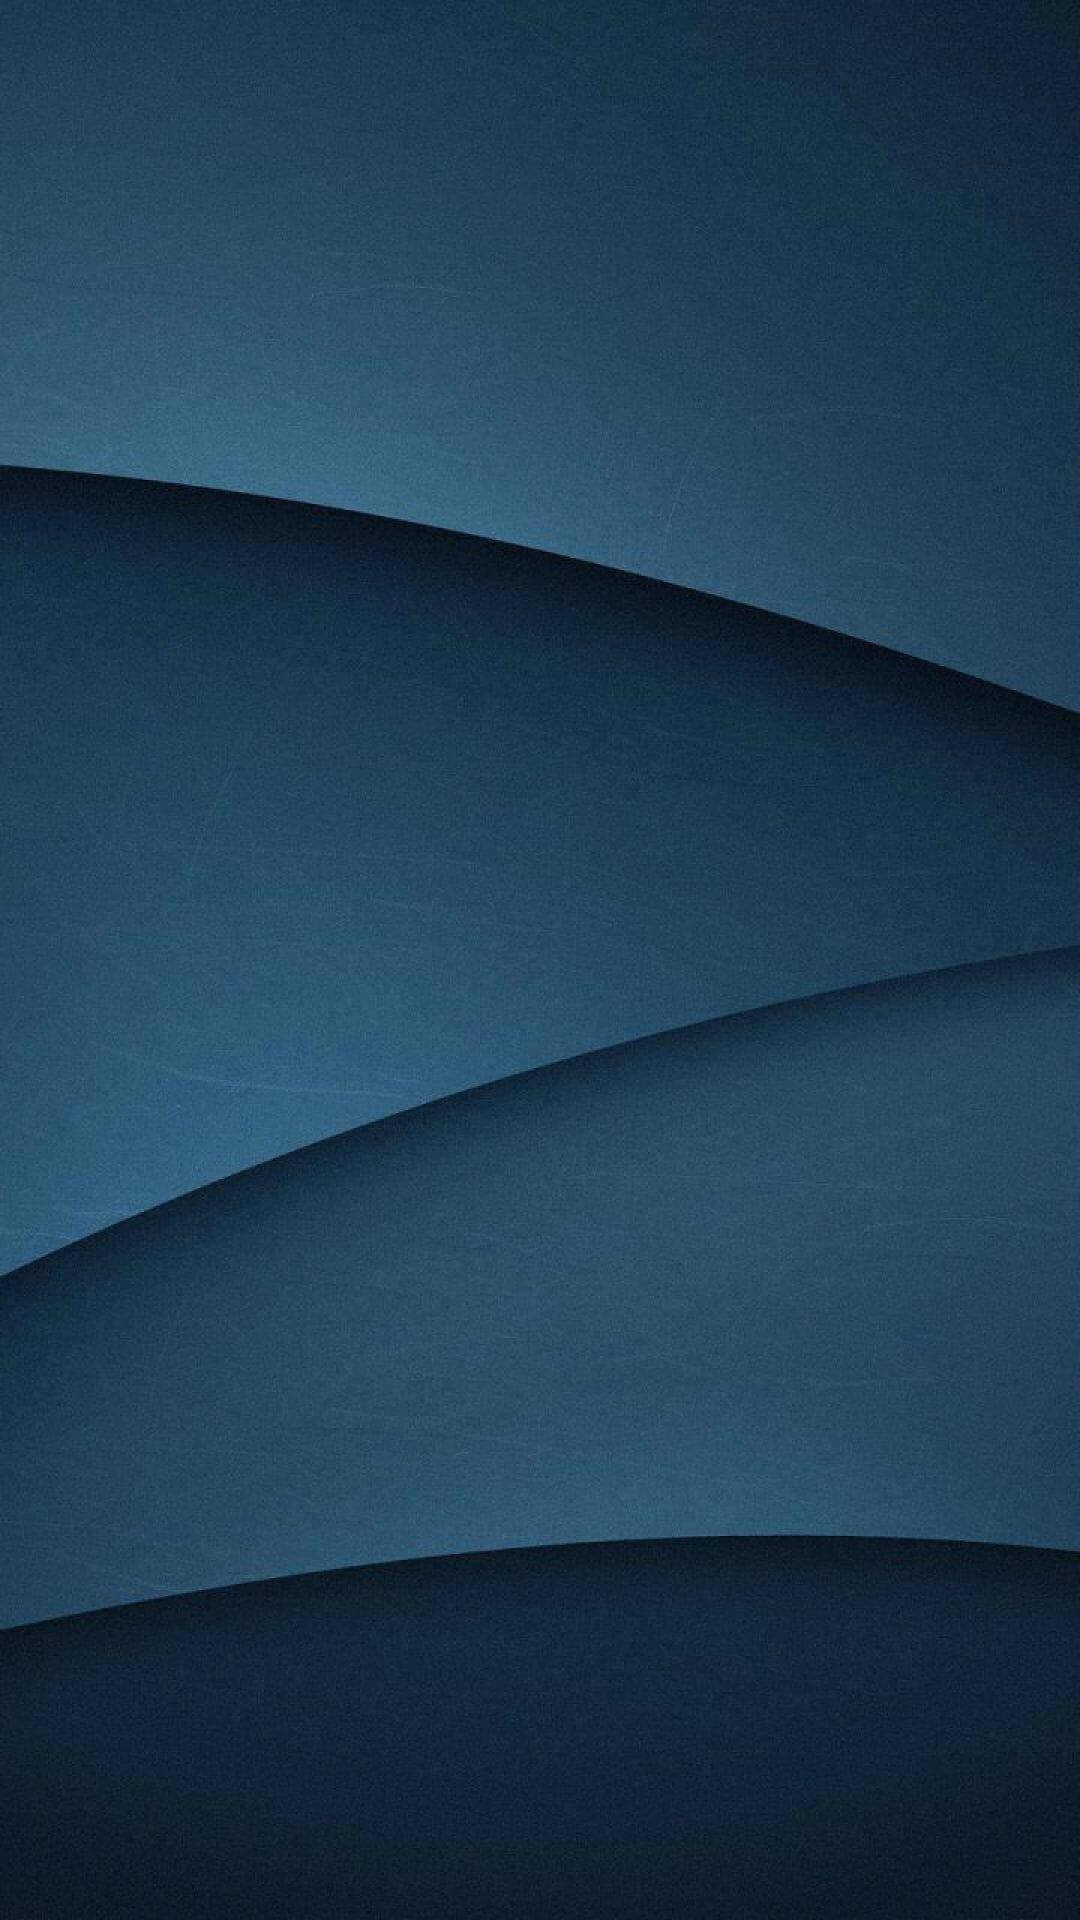 Einblauer Hintergrund Mit Einer Geschwungenen Form Wallpaper